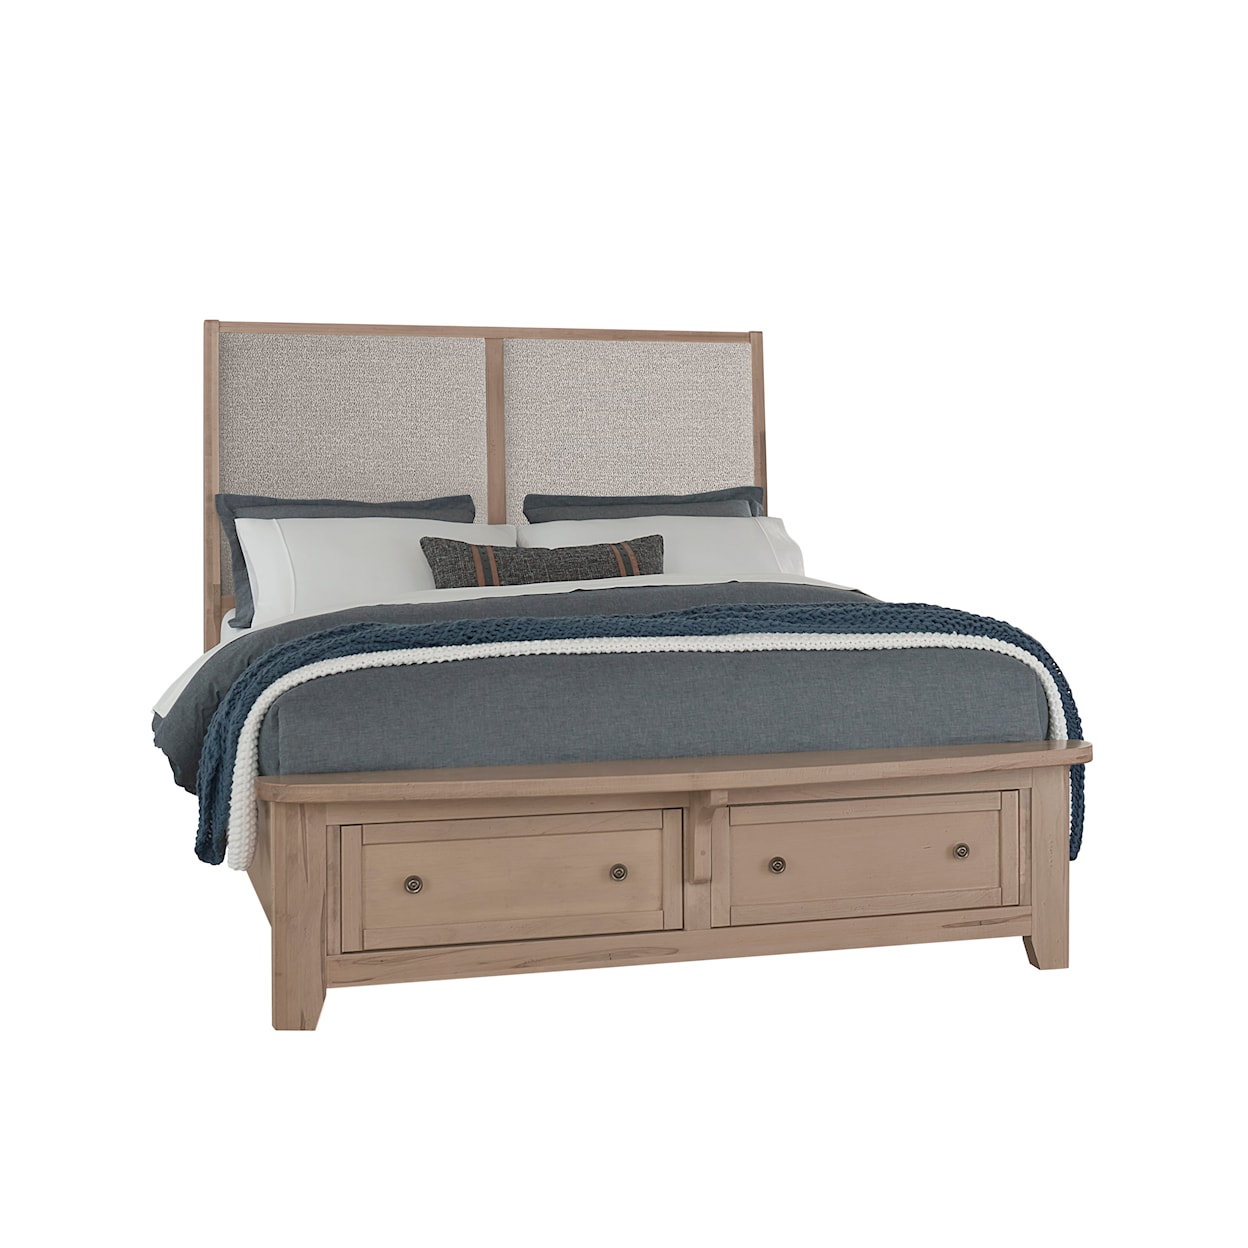 Vaughan Bassett Woodbridge Queen Upholstered Storage Bed